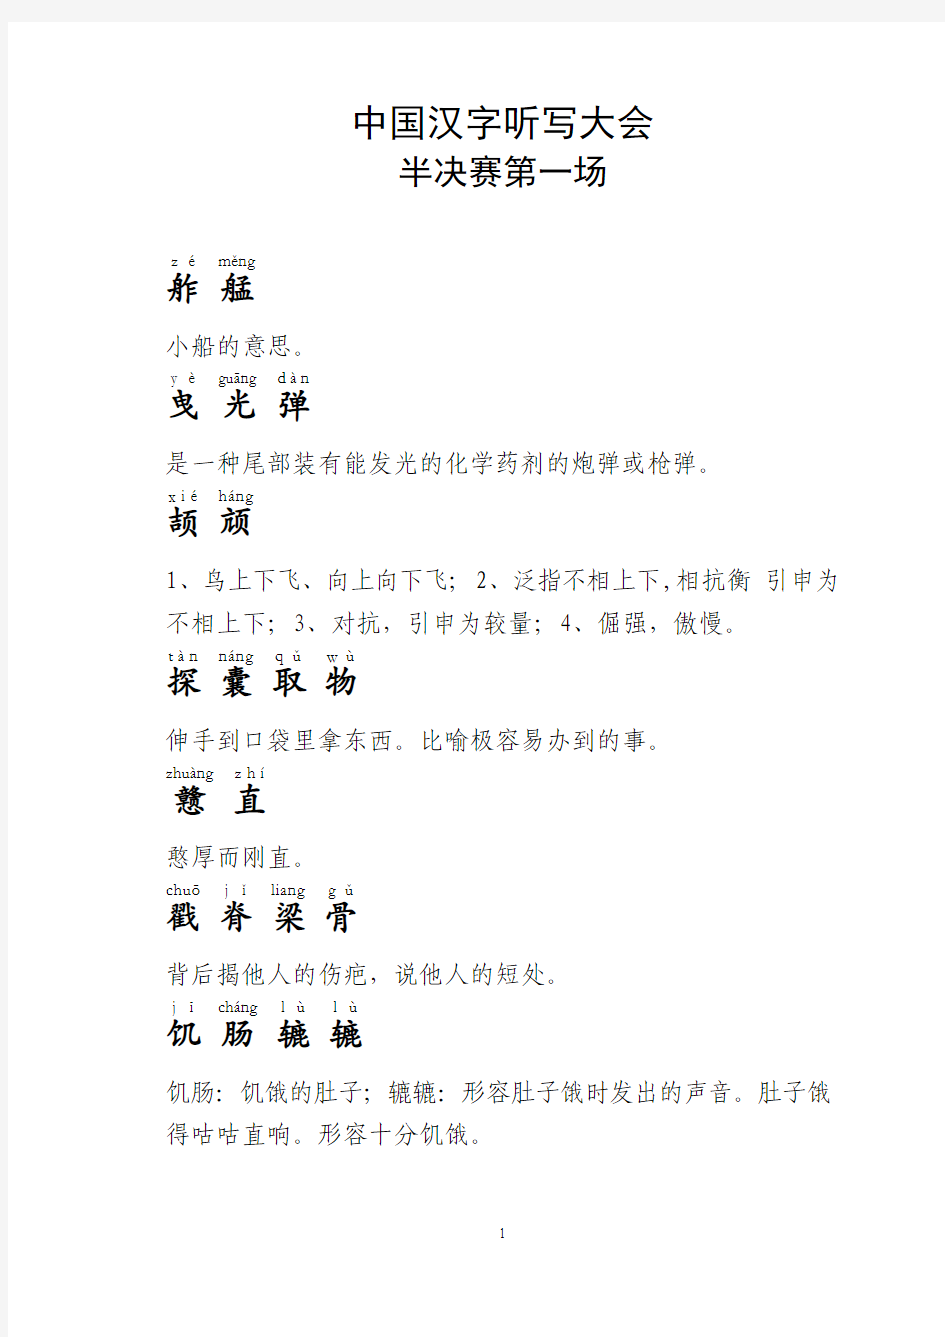 中国汉字听写大会半决赛第一场 全部字词及解释